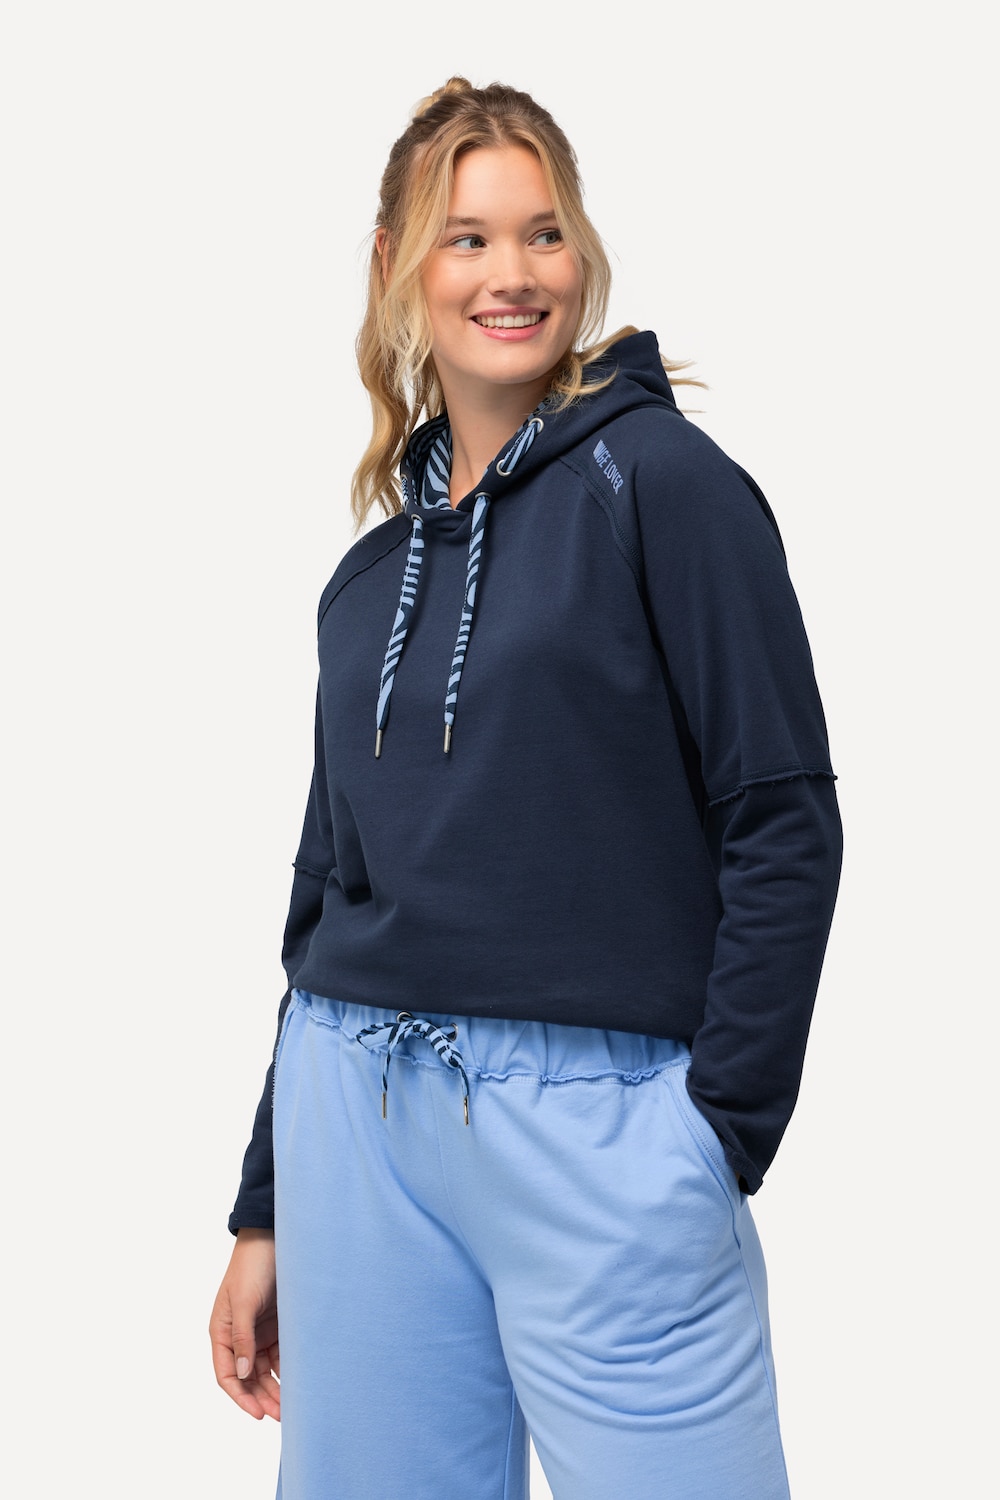 Grote Maten Loungewear-hoodie, Dames, blauw, Maat: 46/48, Katoen/Polyester, Ulla Popken